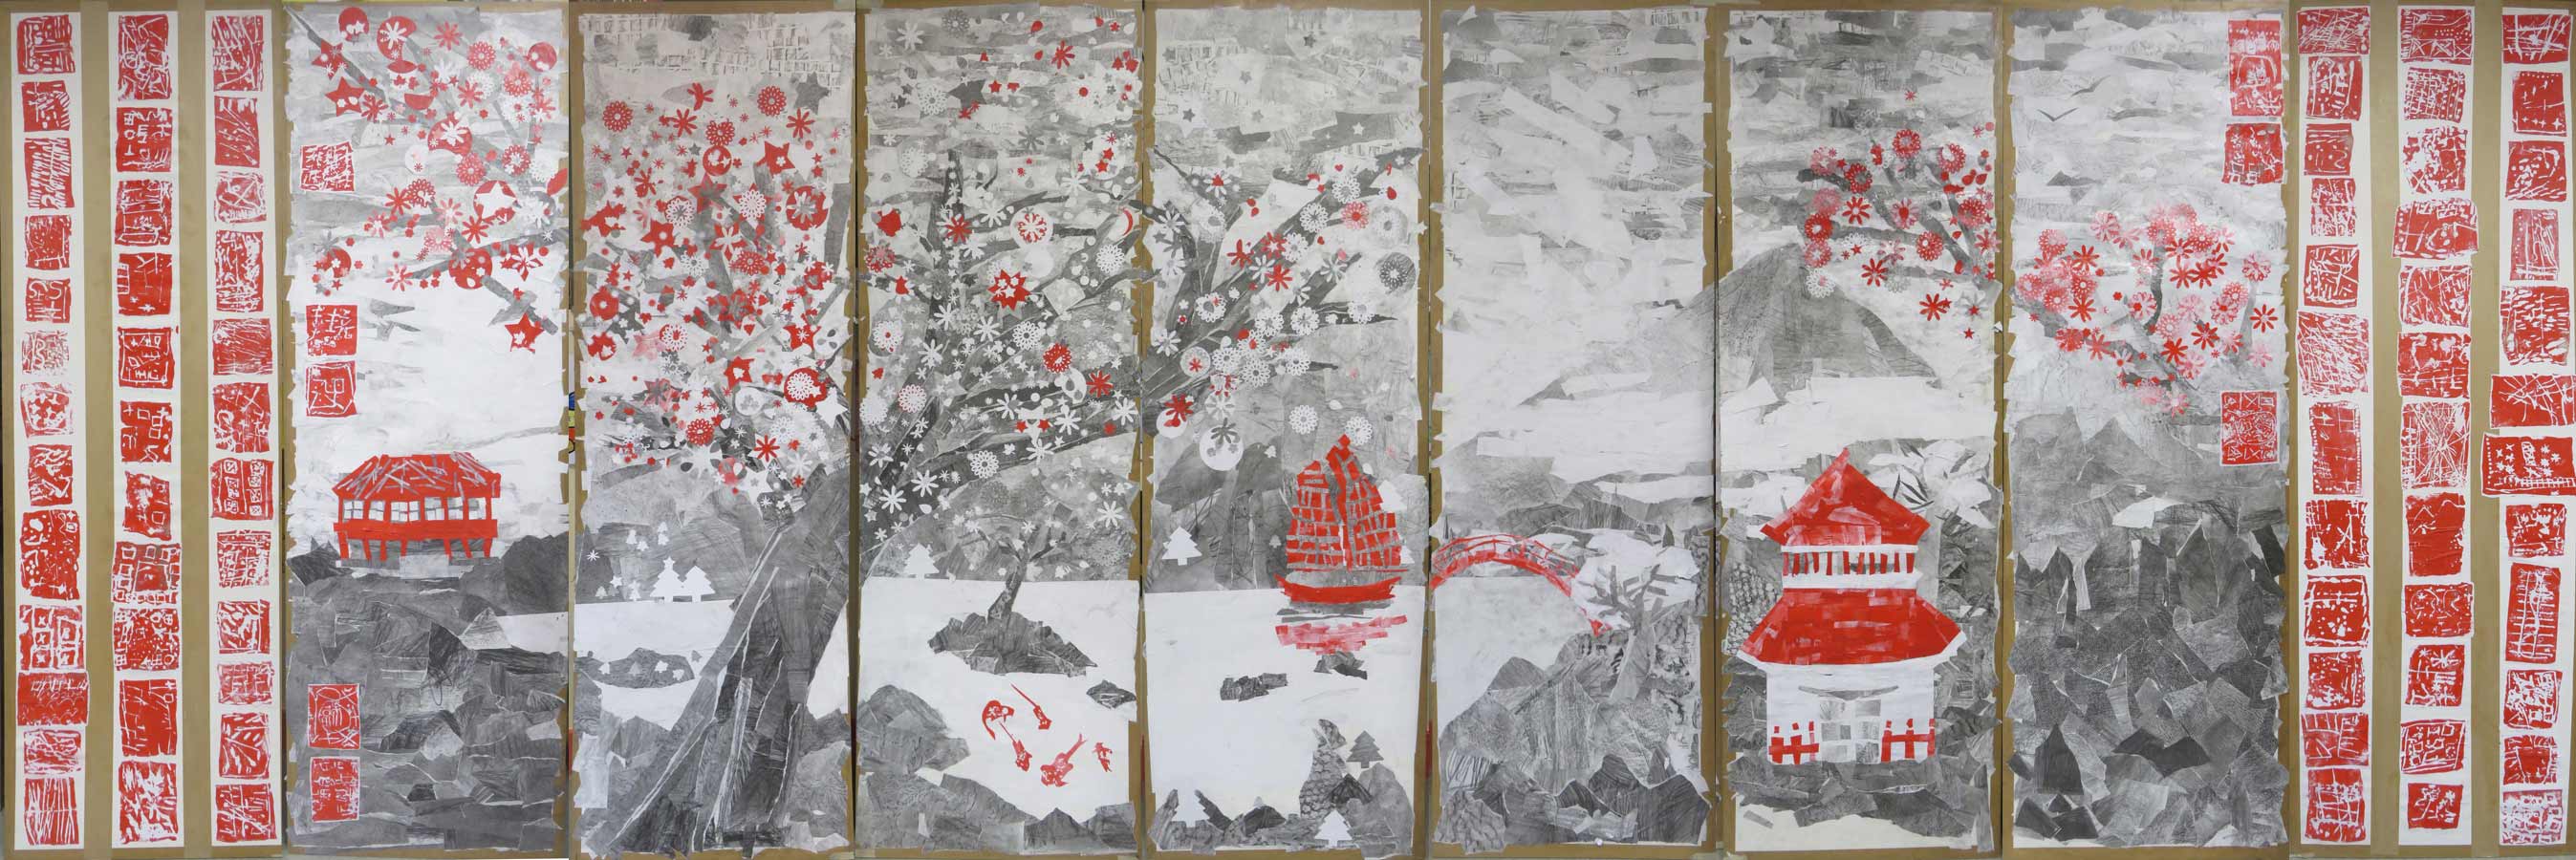 Grand collage inspiré des estampes japonaises